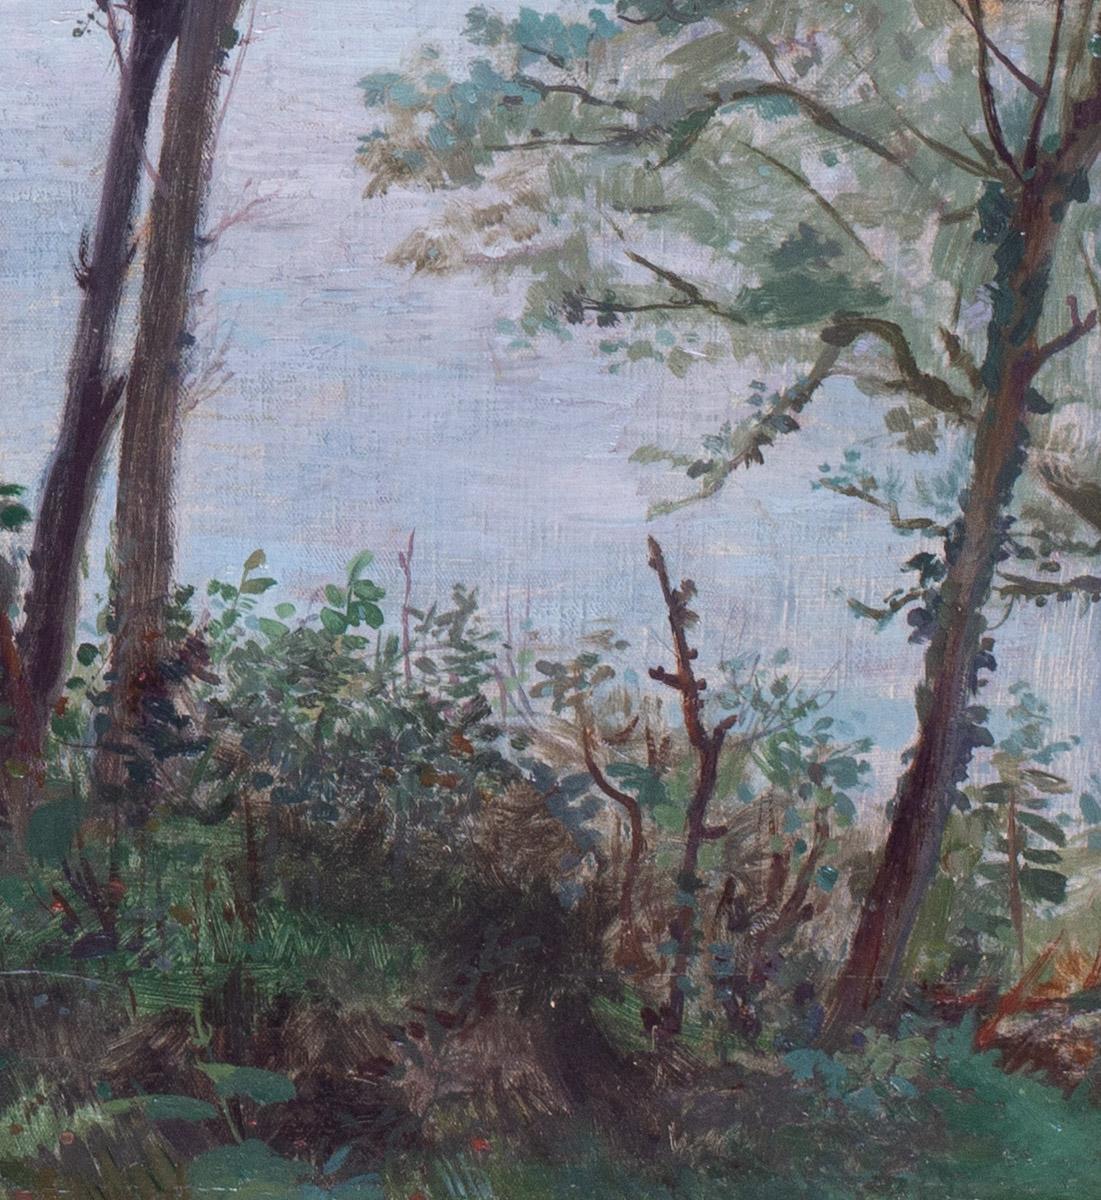 Une belle scène impressionniste estivale d'une jeune fille assise près de la mer sous une voûte de feuilles vertes.

Eugène Habert (français, 1842 - 1916)
Une fille et son dindon au-dessus de la baie
Huile sur toile
Signé 